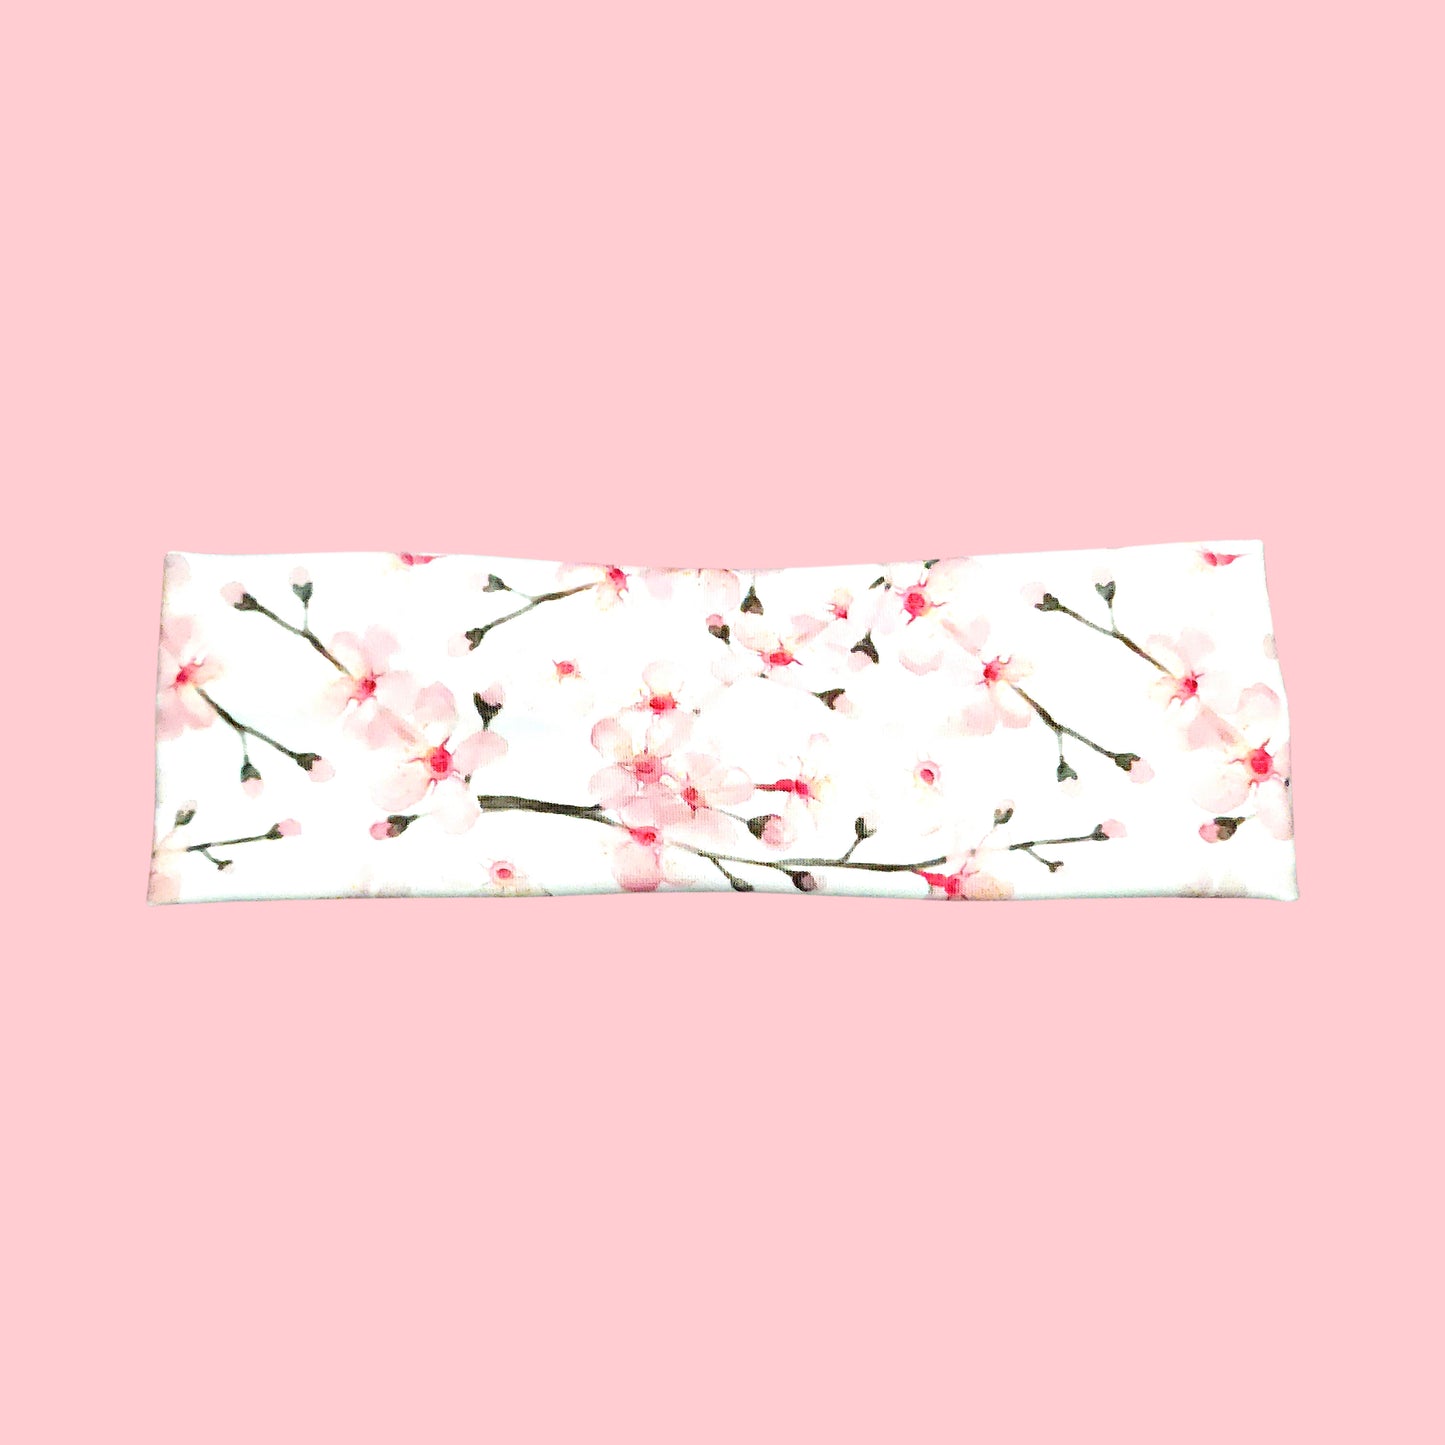 White Cherry Blossom Flower Headband for Women